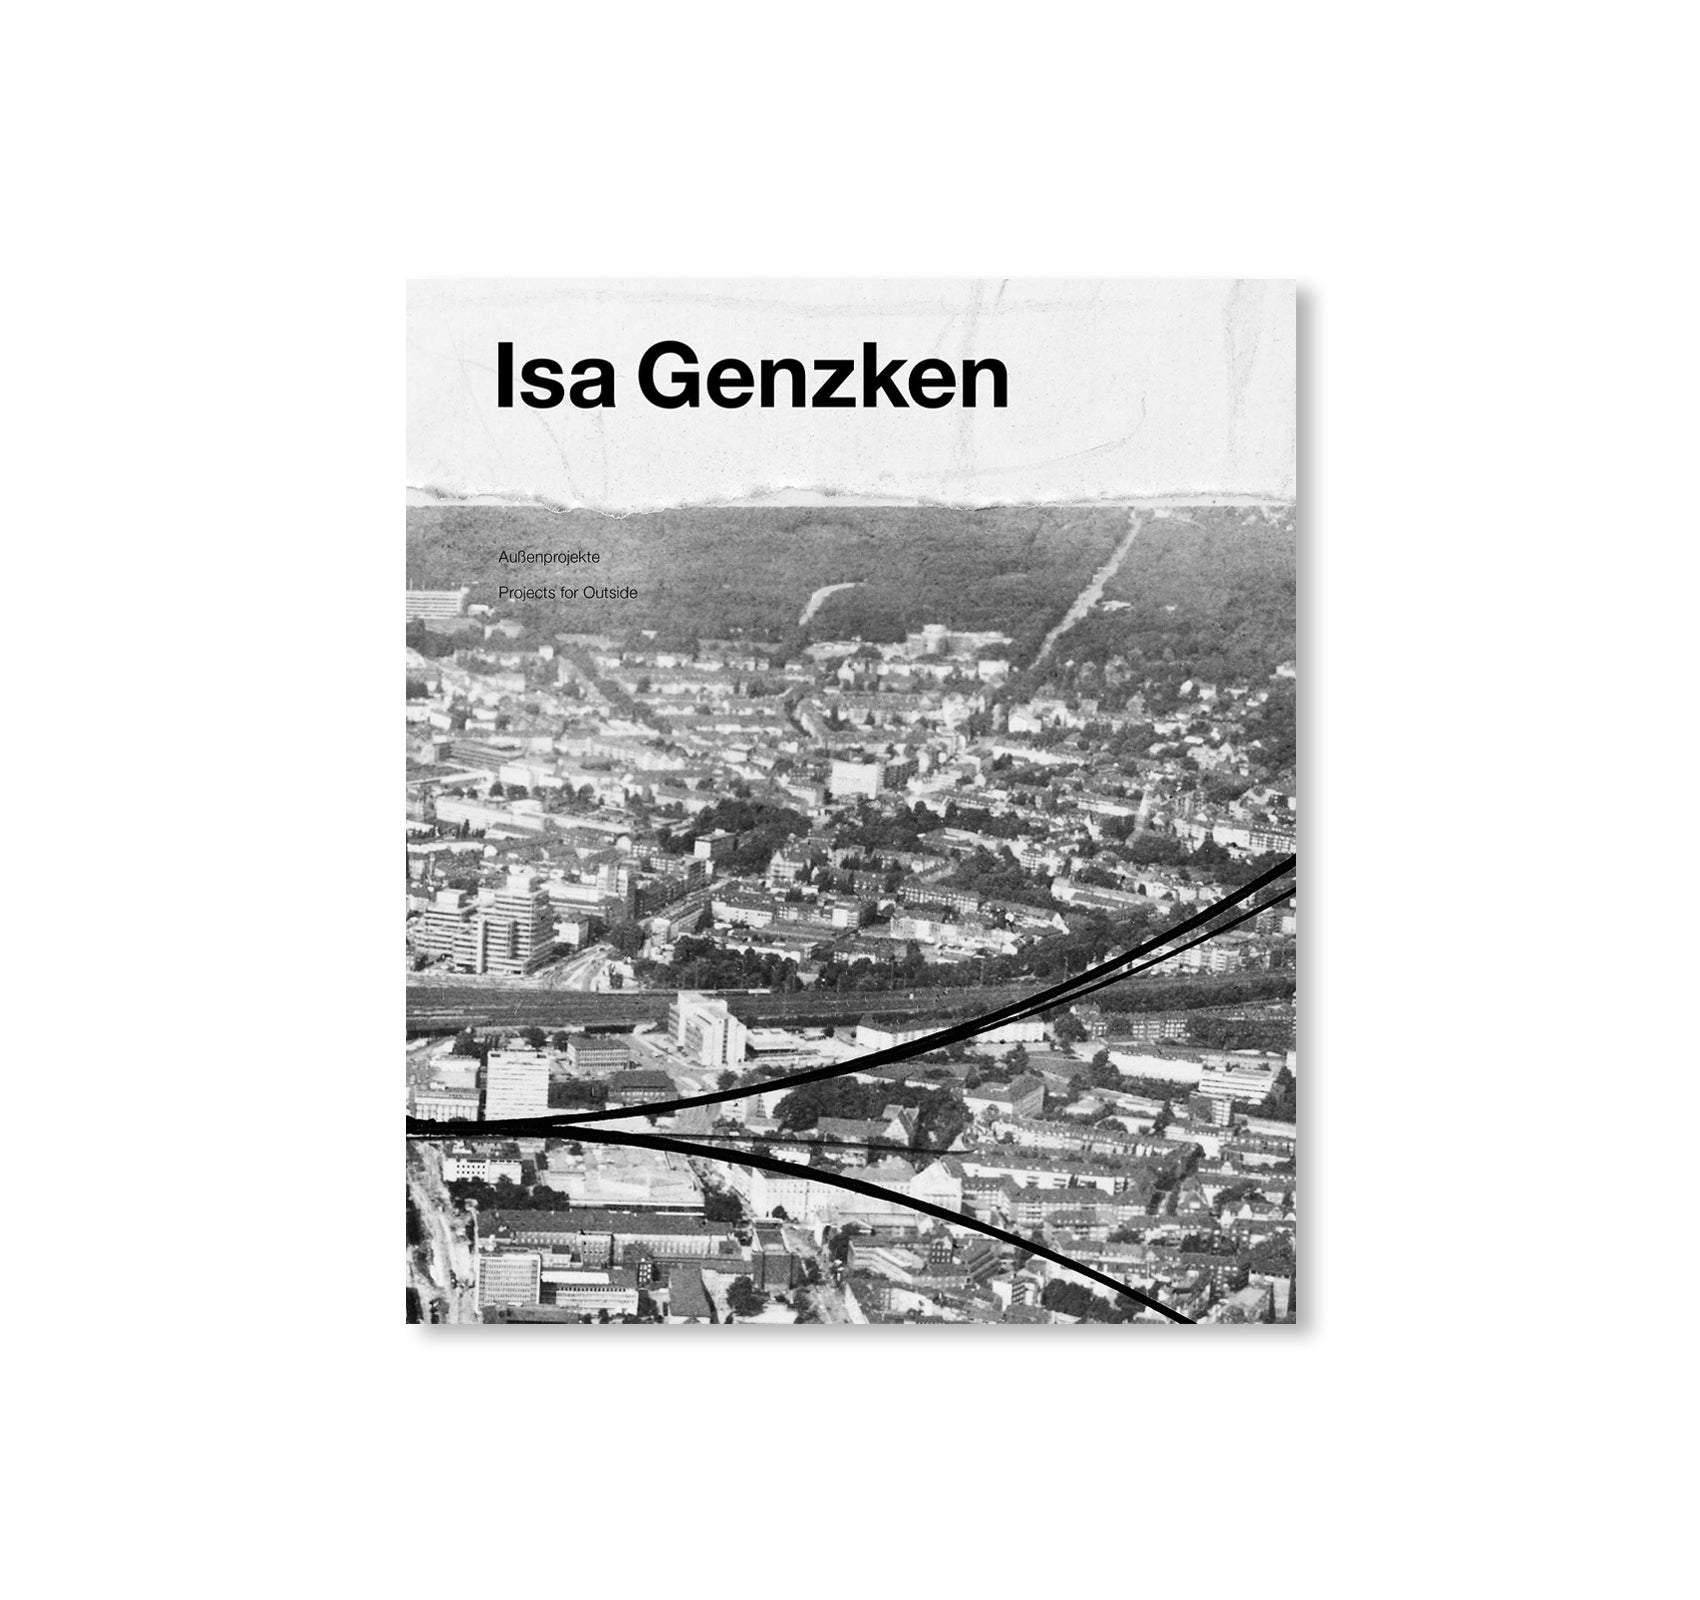 AUßENPROJEKTE / PROJECTS FOR OUTSIDE by Isa Genzken